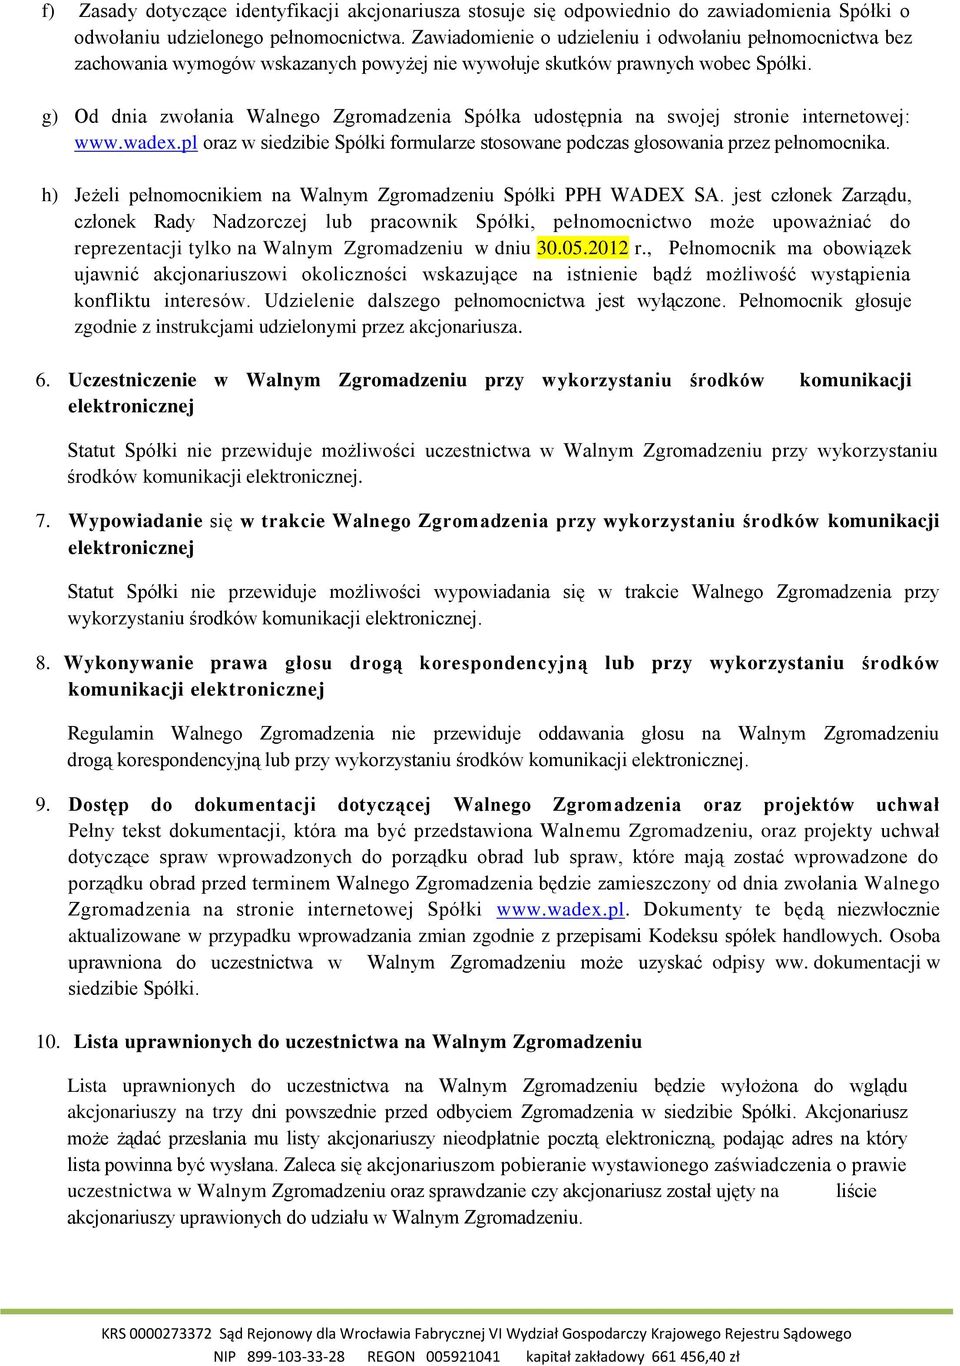 g) Od dnia zwołania Walnego Zgromadzenia Spółka udostępnia na swojej stronie internetowej: www.wadex.pl oraz w siedzibie Spółki formularze stosowane podczas głosowania przez pełnomocnika.